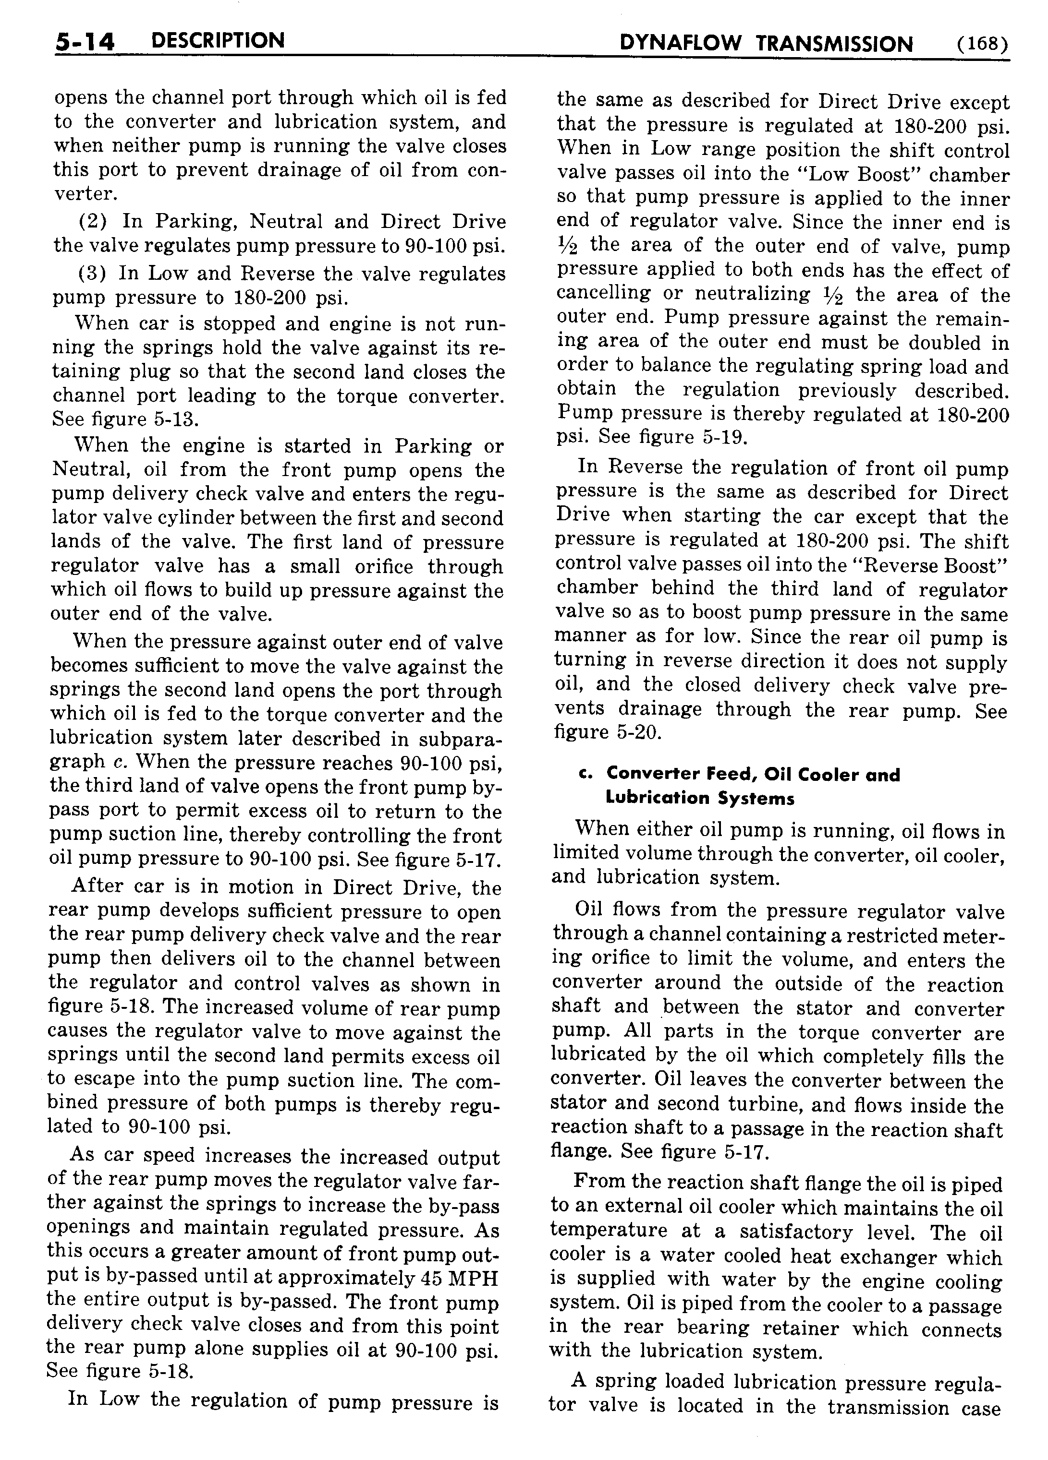 n_06 1954 Buick Shop Manual - Dynaflow-014-014.jpg